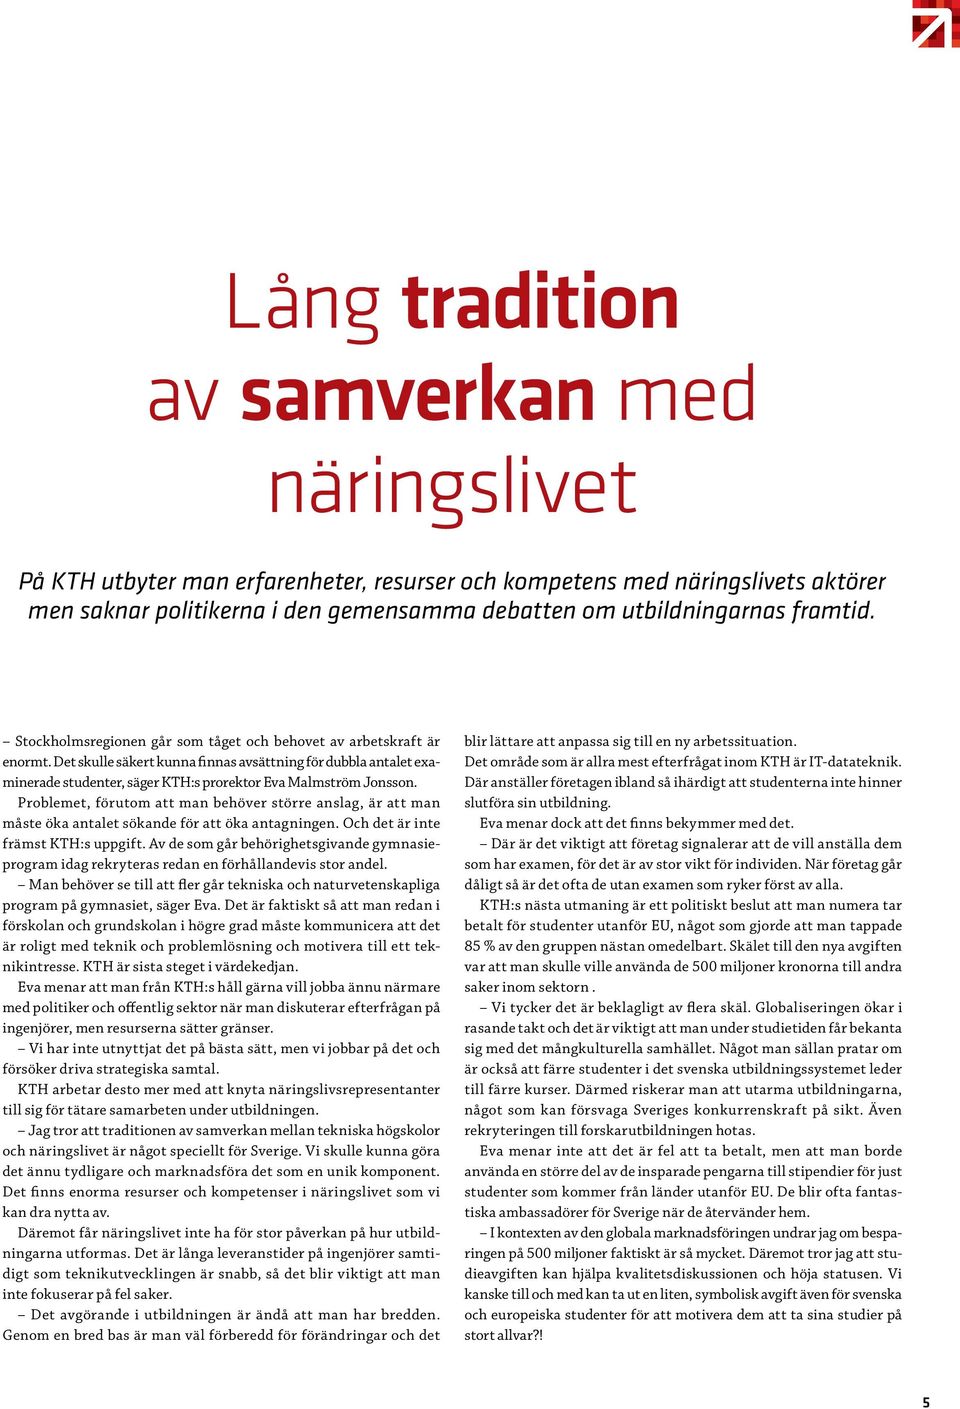 Det skulle säkert kunna finnas avsättning för dubbla antalet examinerade studenter, säger KTH:s prorektor Eva Malmström Jonsson.